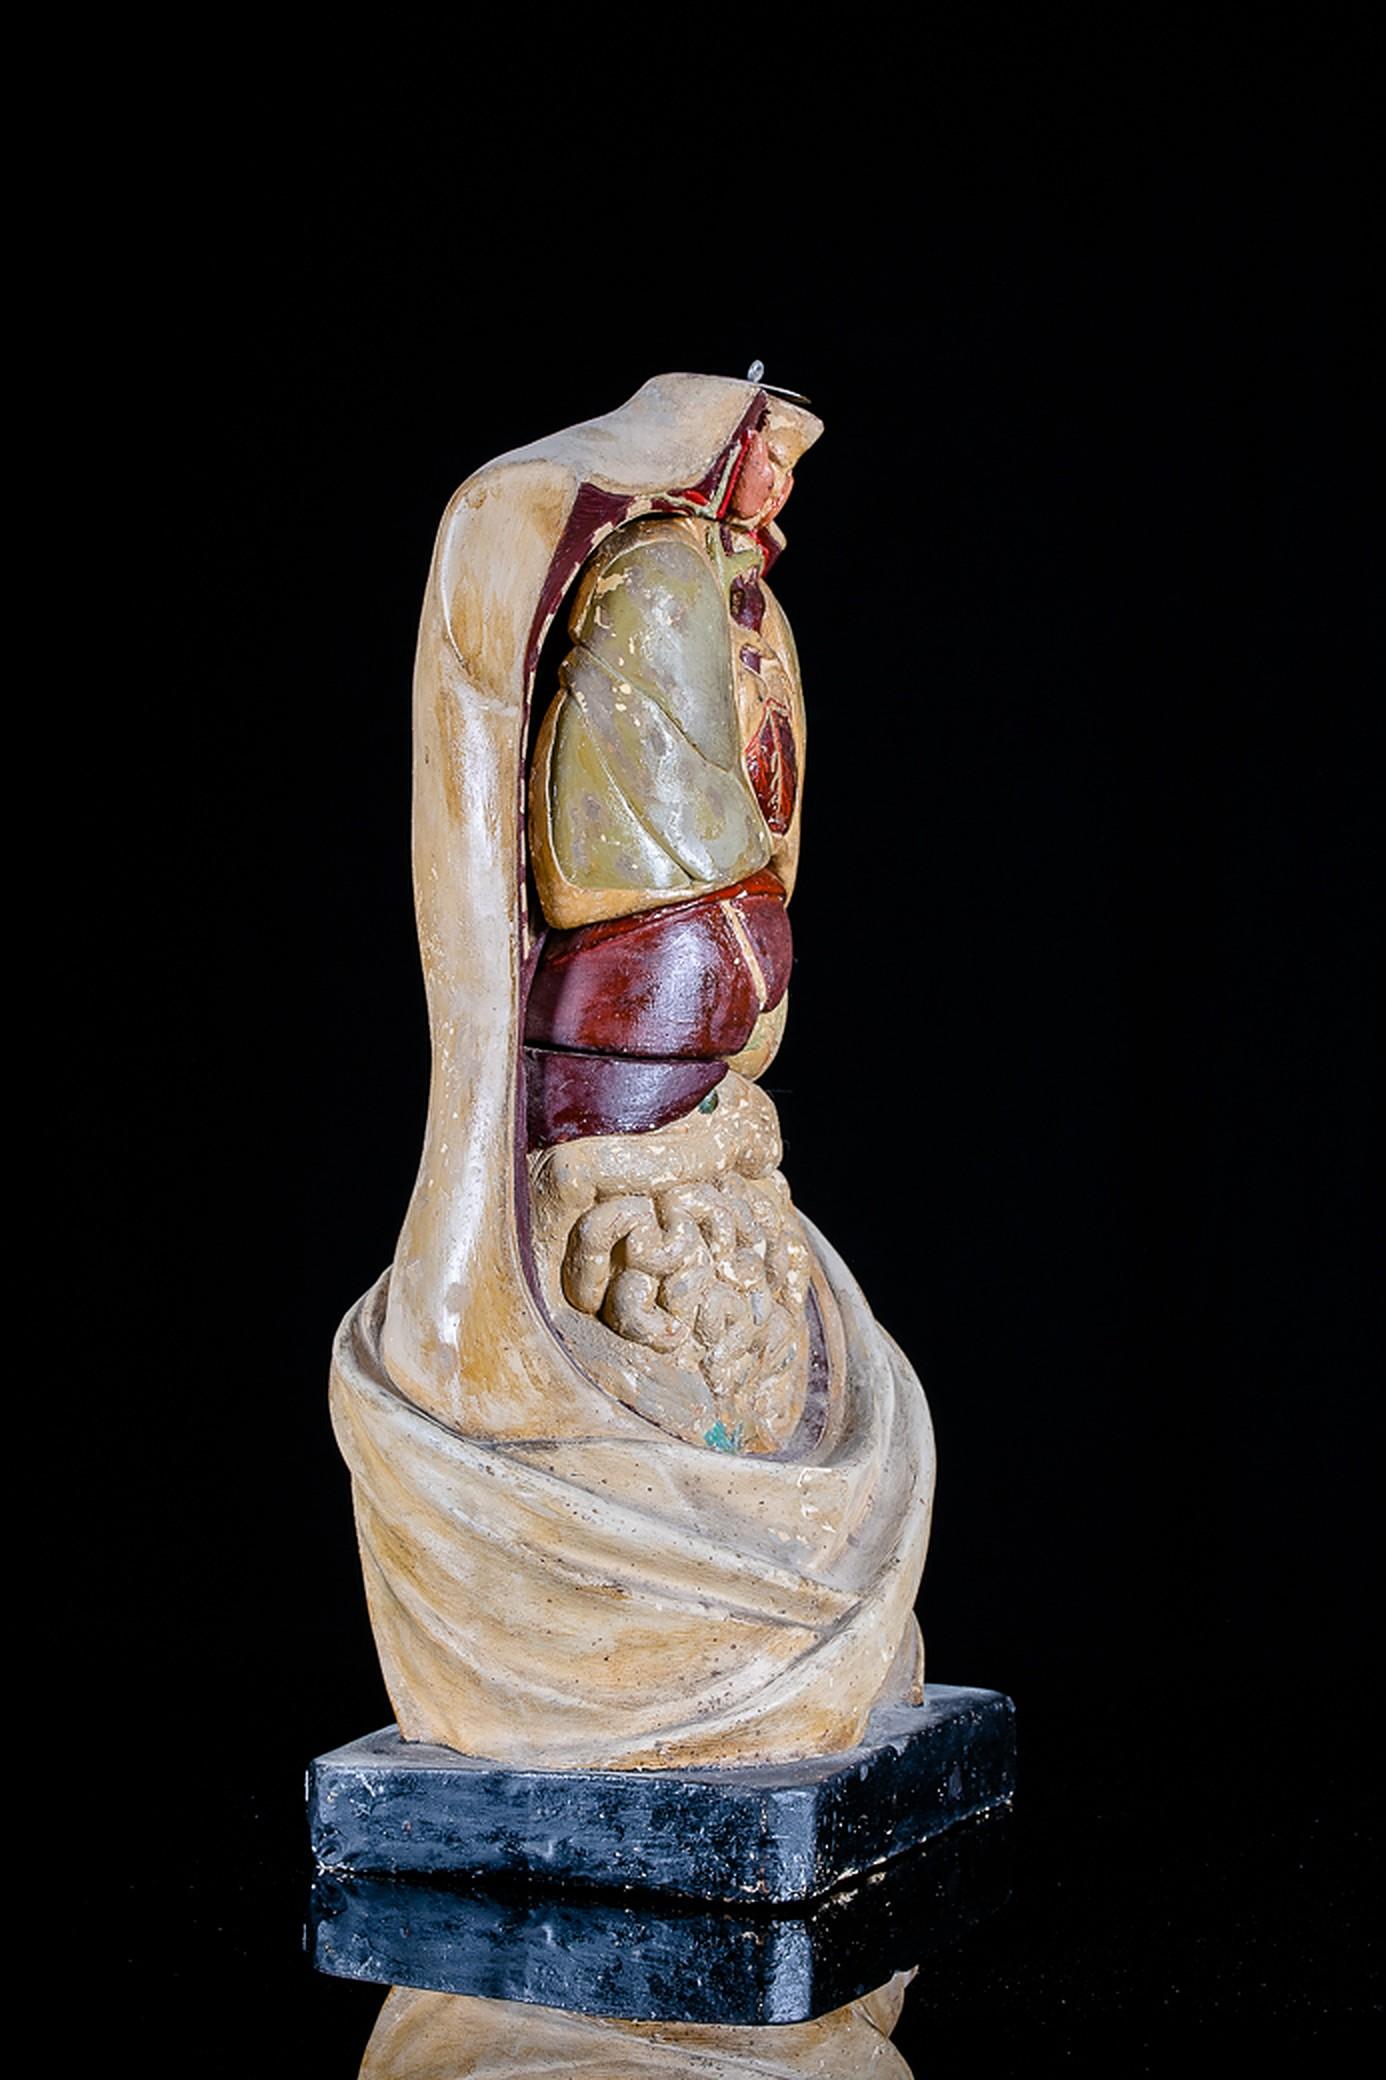 Der deutsche Bildhauer Franz Josef Steger (1845-1938) revolutionierte in den 1880er Jahren unter der Leitung von Professor Wilhelm His (1831-1904) und auf der Grundlage der Entwürfe des Anatomen Carl Ernst Bock (1809-1874) anatomische Modelle, indem